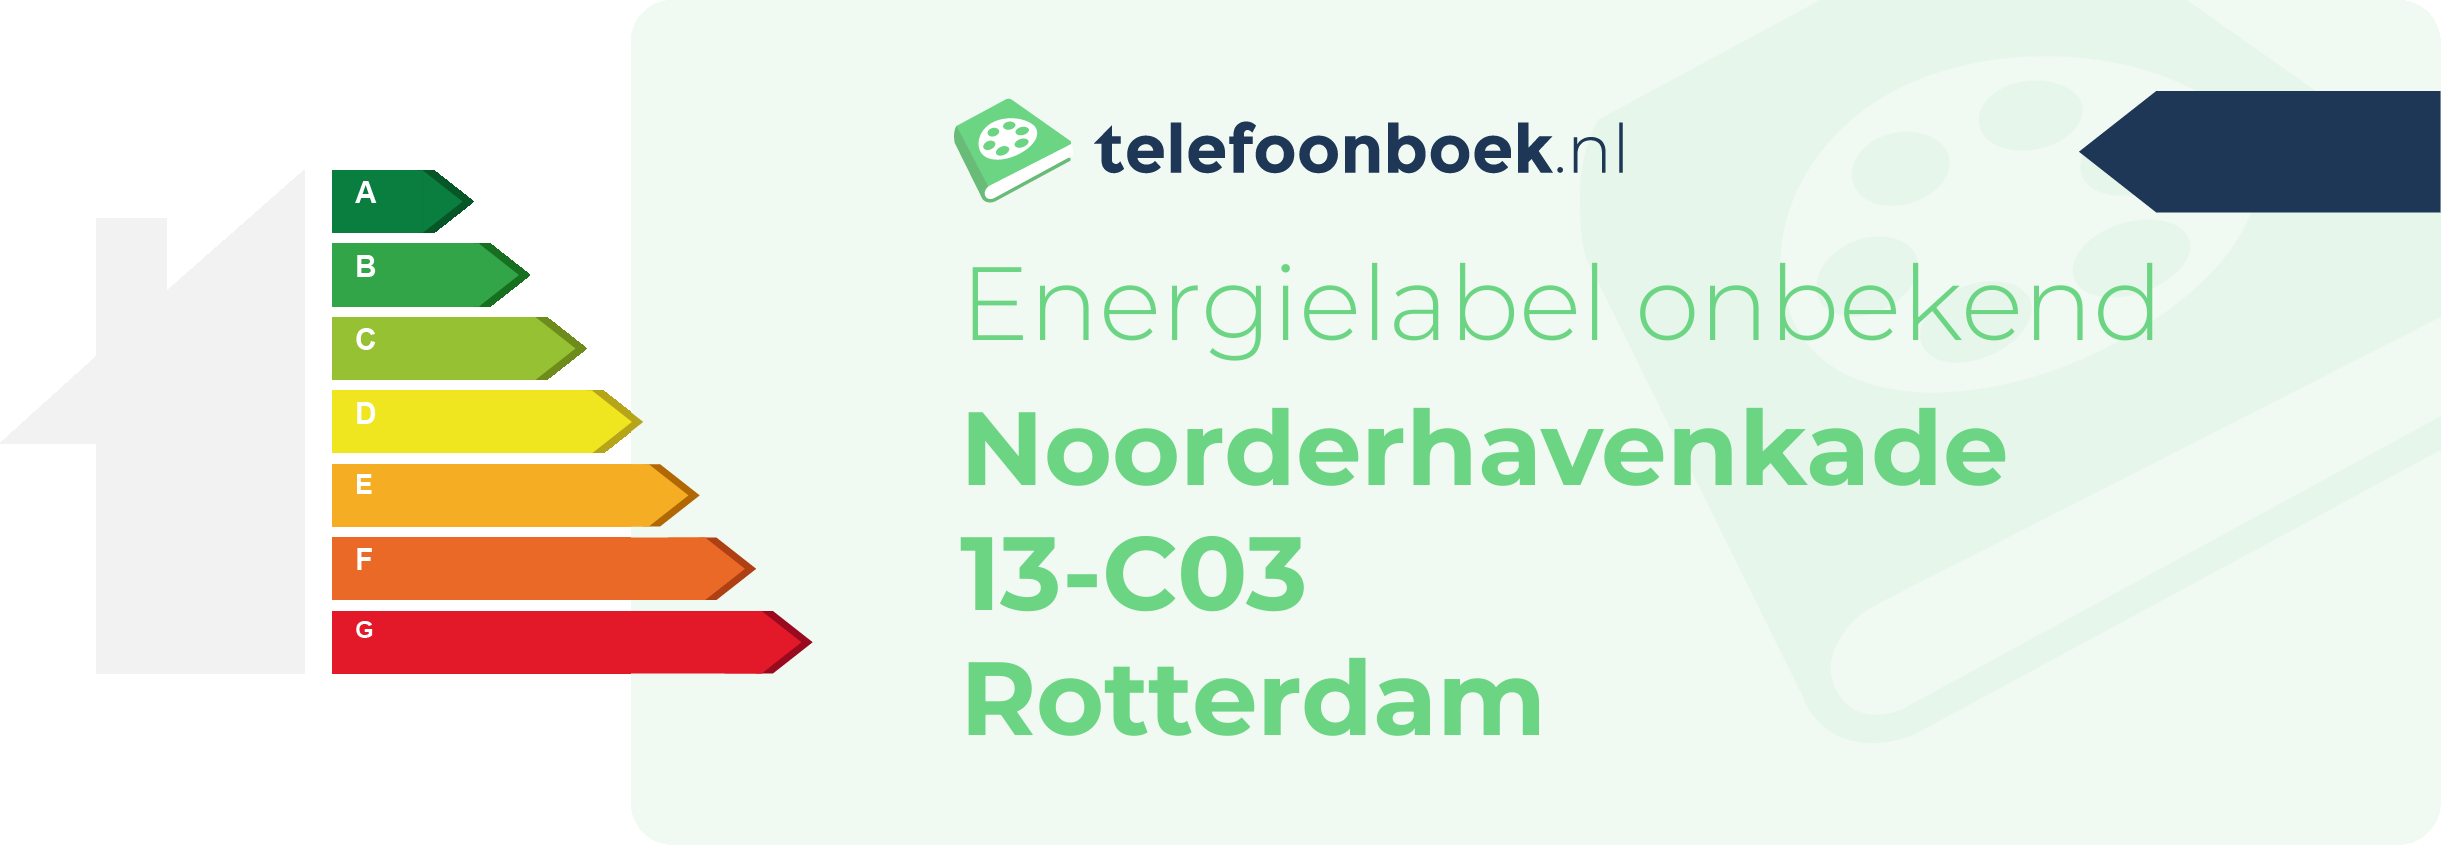 Energielabel Noorderhavenkade 13-C03 Rotterdam